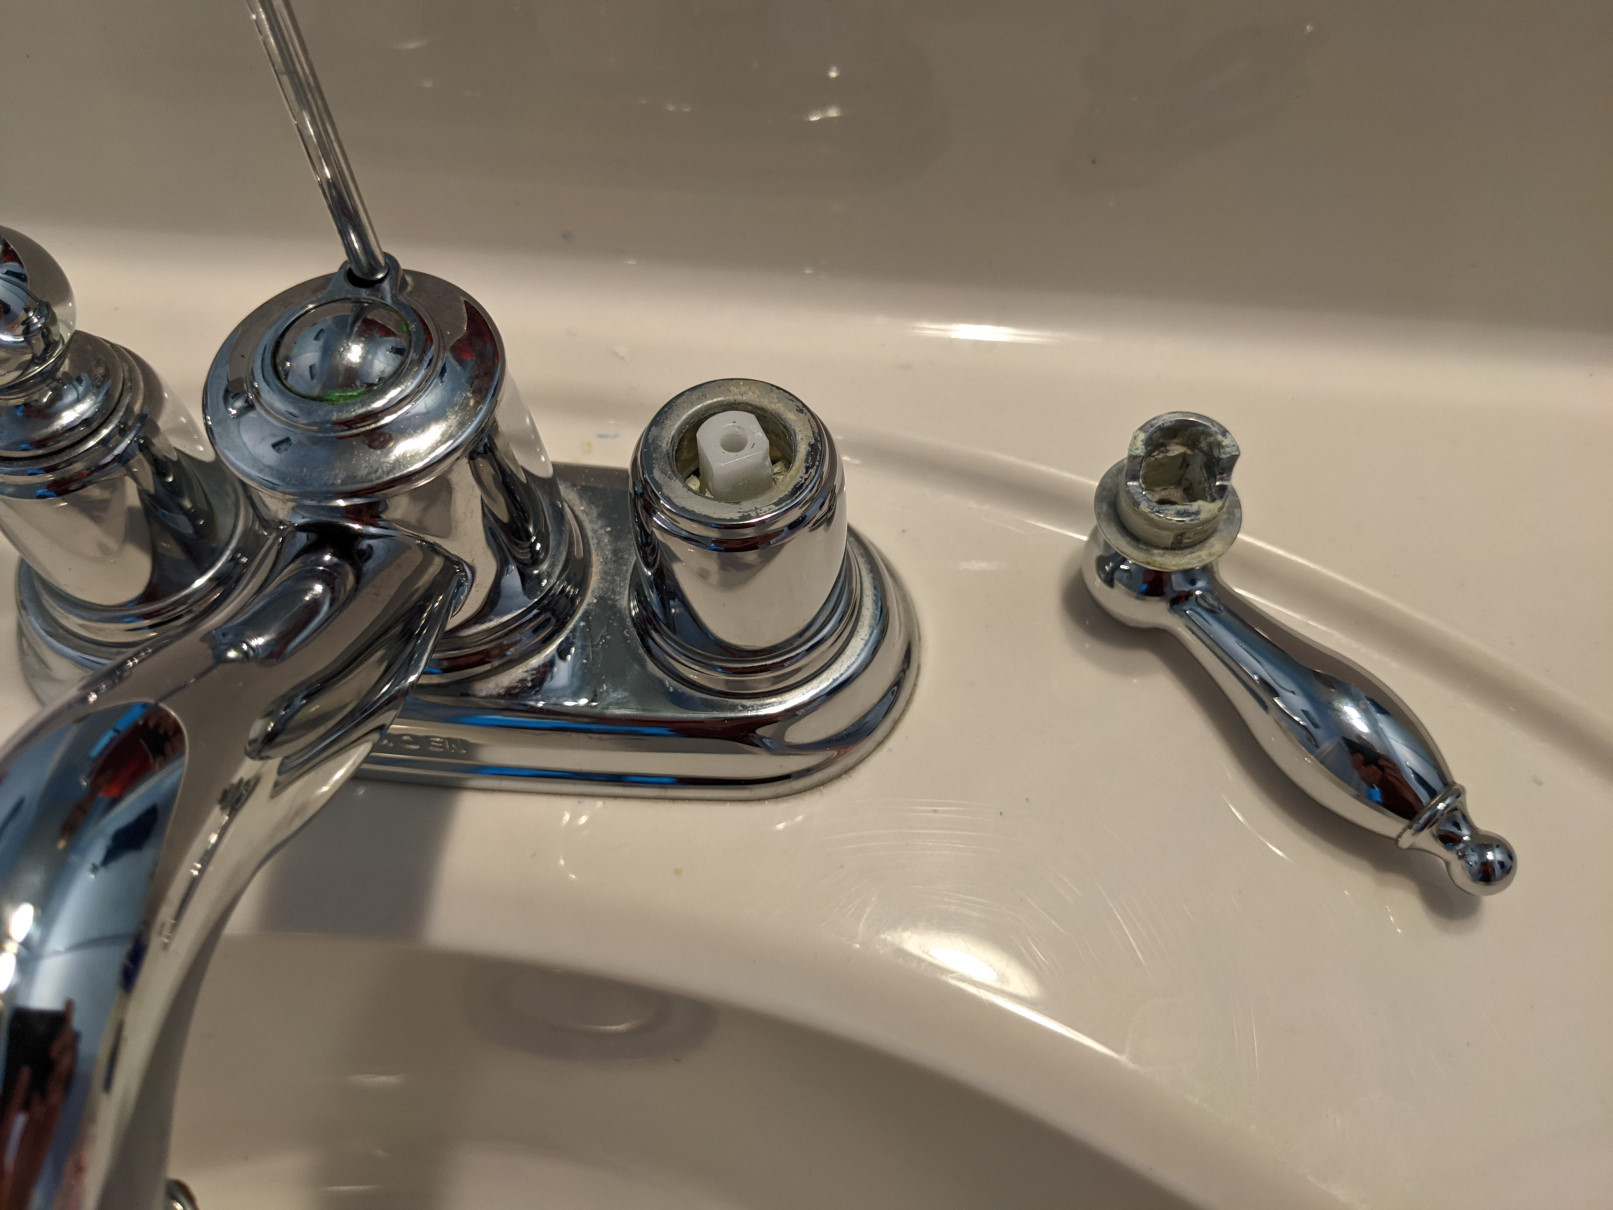 How To Remove Moen Bathroom Faucet Handle 1692852027 